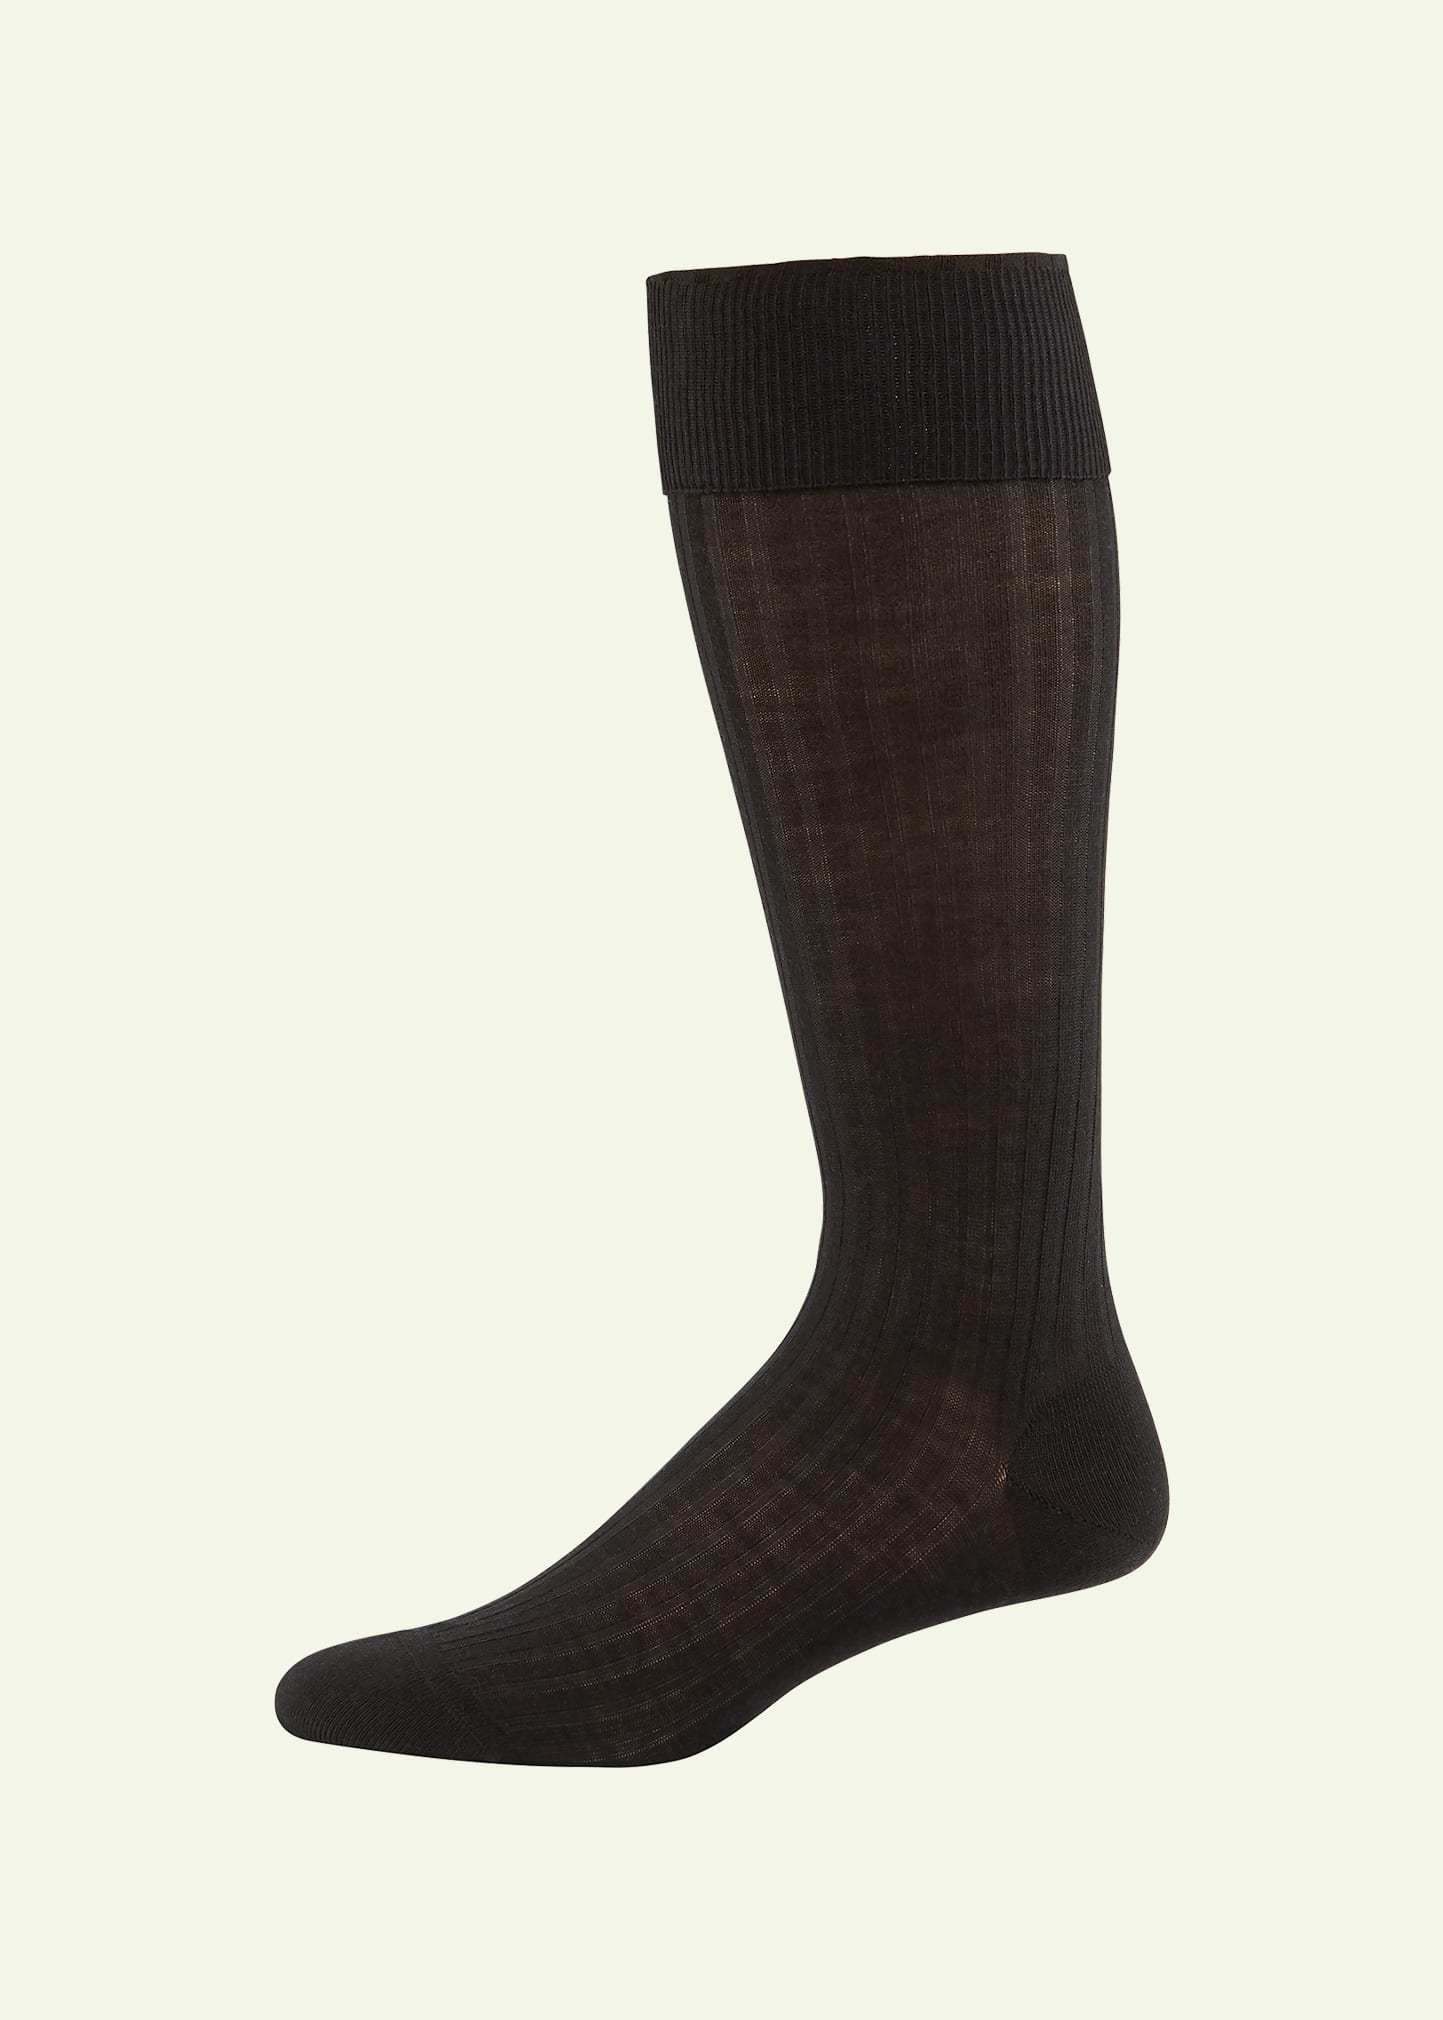 Pantherella Men's Laburnum Over-the-calf Ribbed Merino Wool Socks In Black